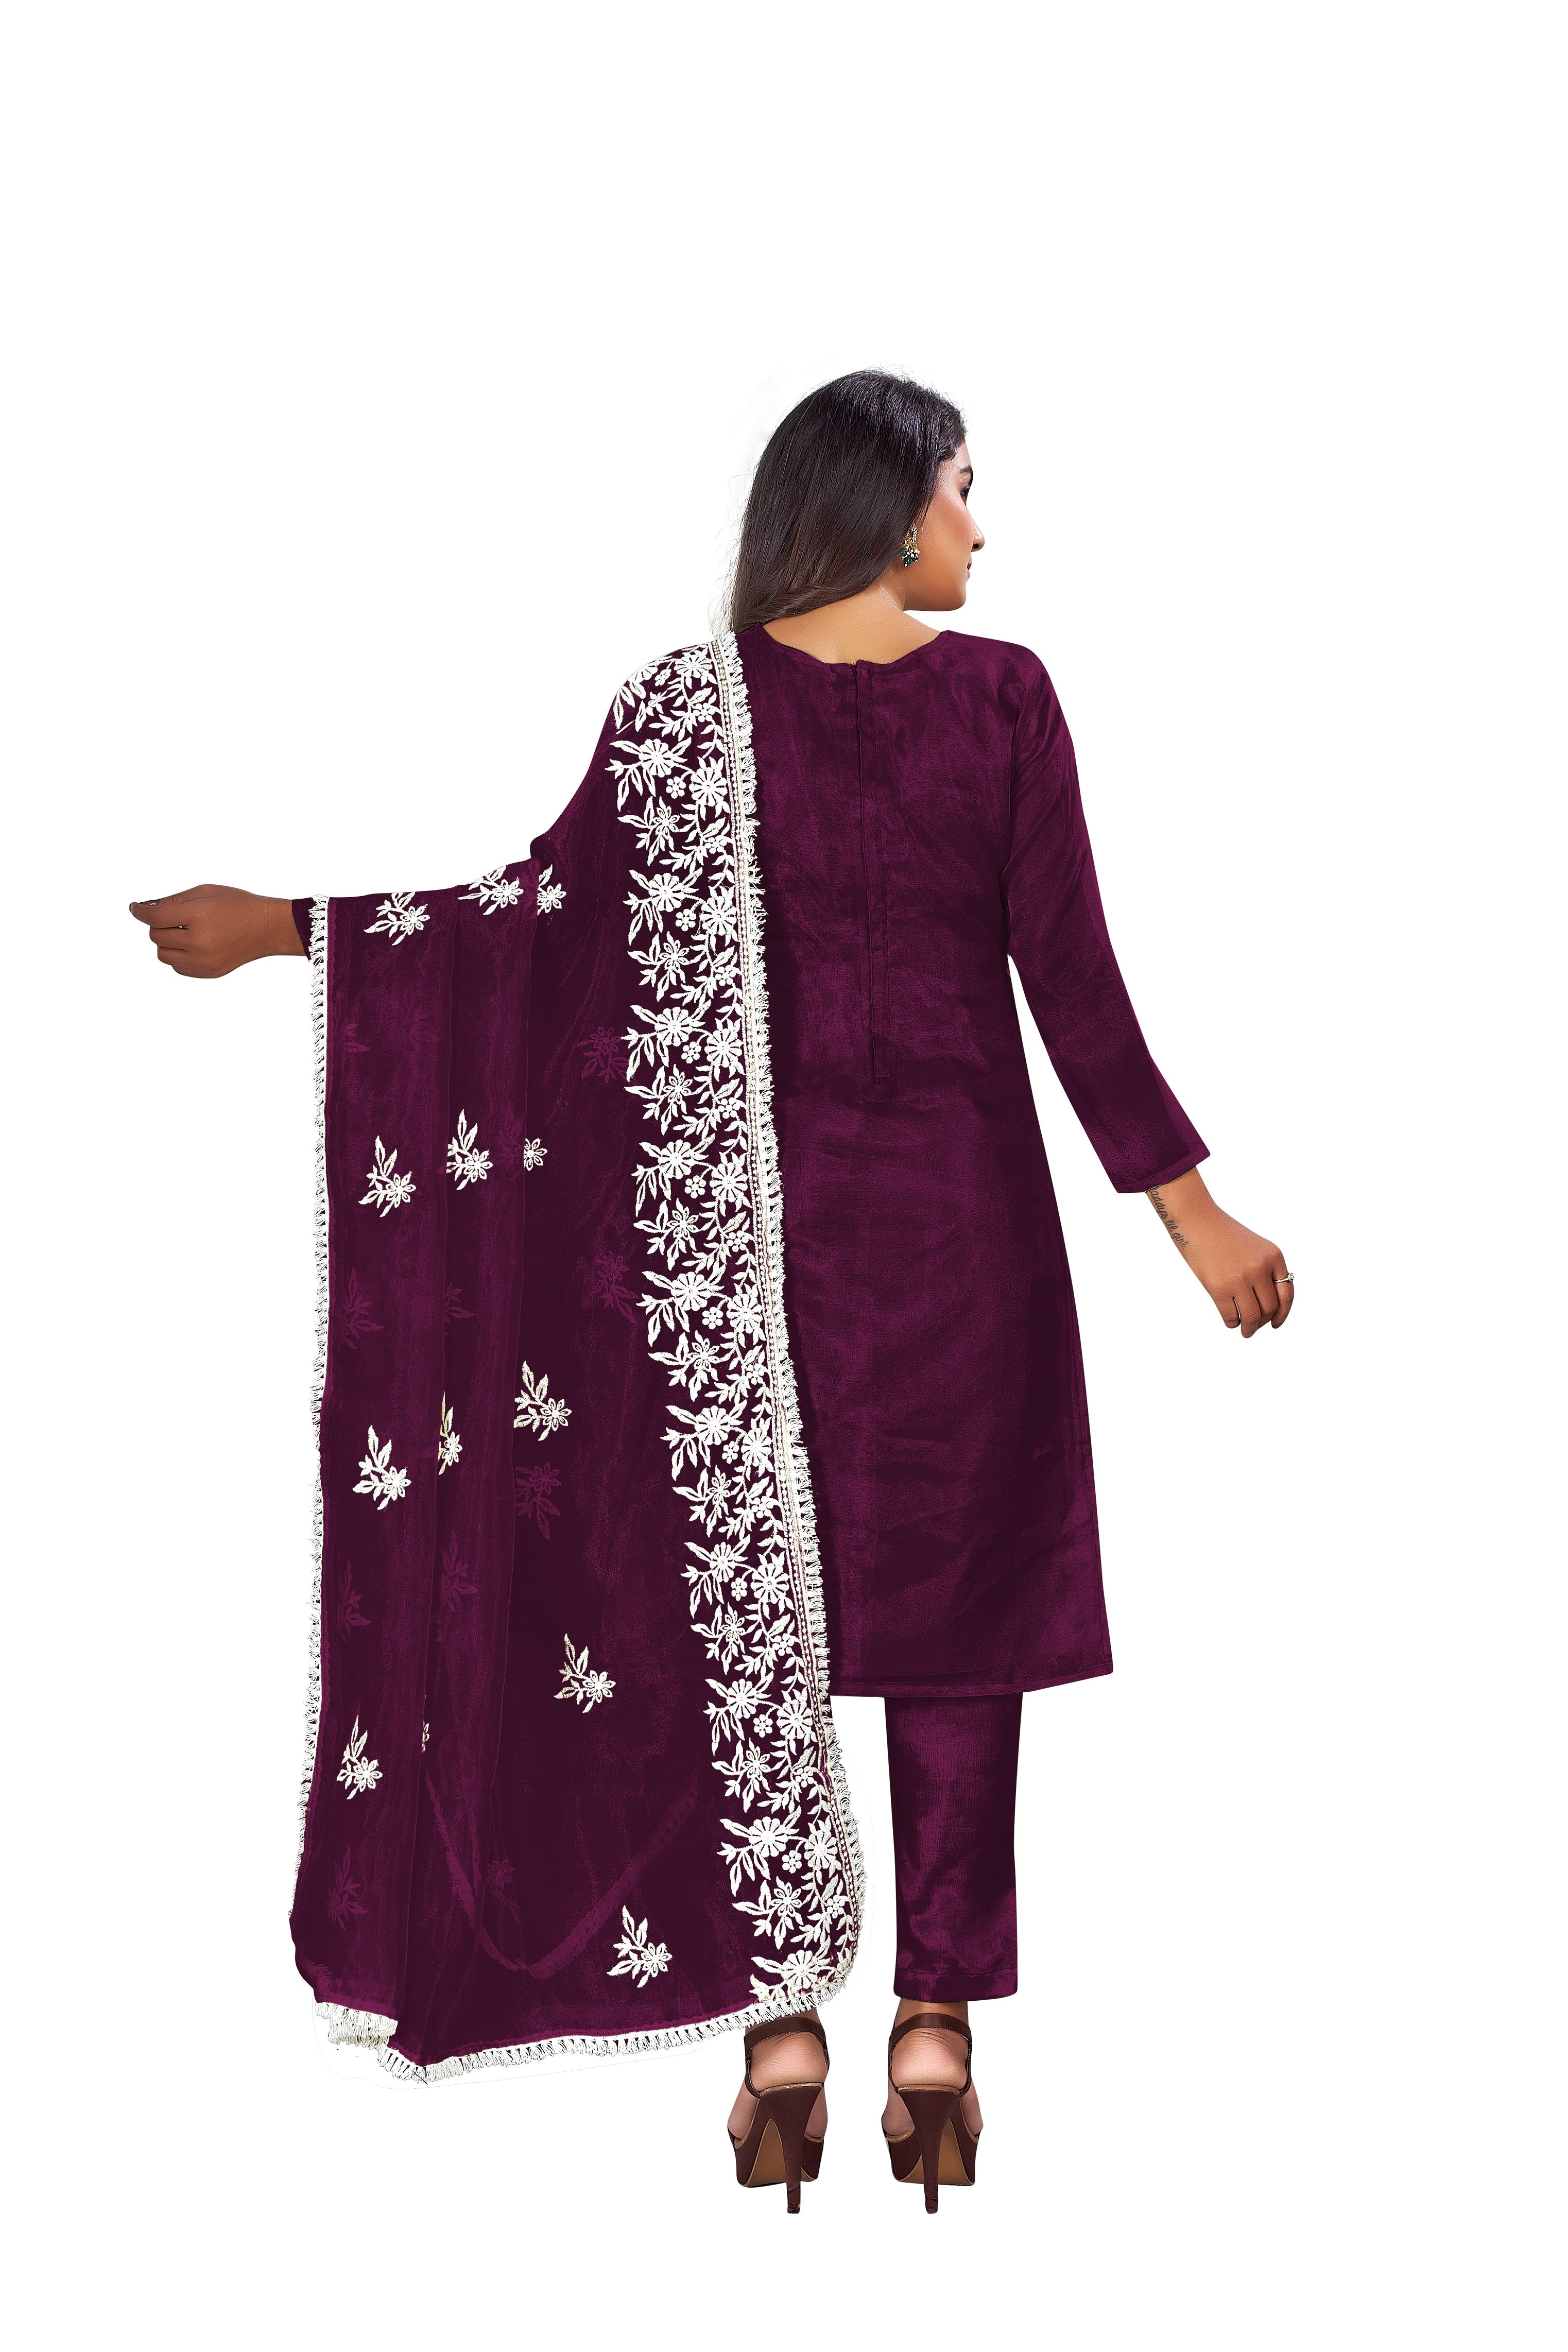 Women's Purple Colour Semi-Stitched Suit Sets - Dwija Fashion